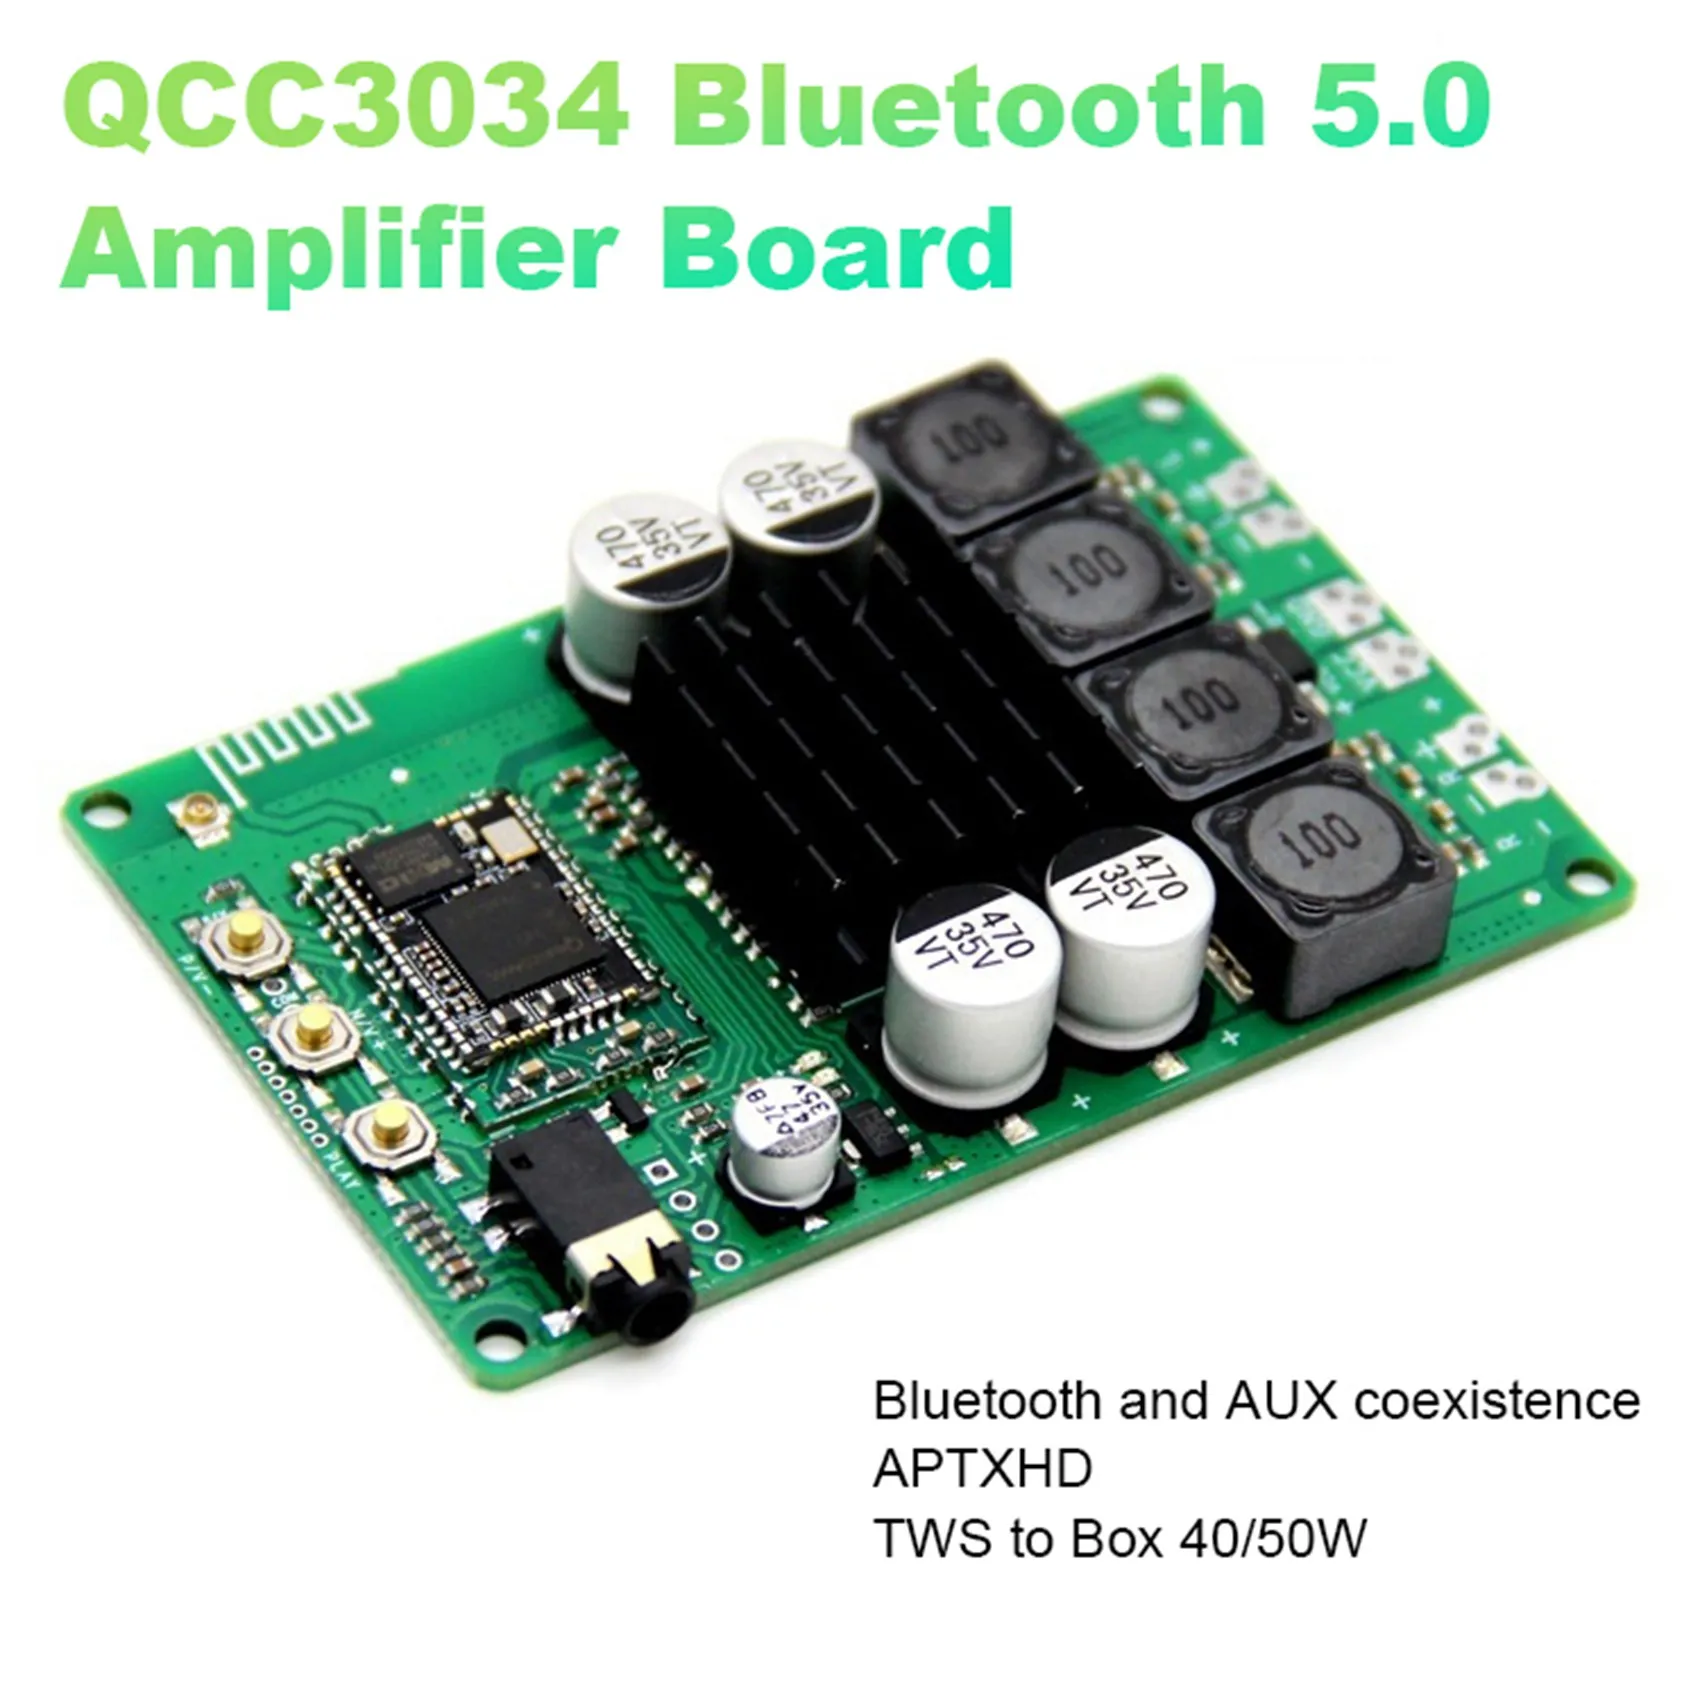 

QCC3034 Bluetooth 5.0 Amplifier Board Low Power TWS Audio Input APTXHD Amplifier 2X40W/50W with AUX